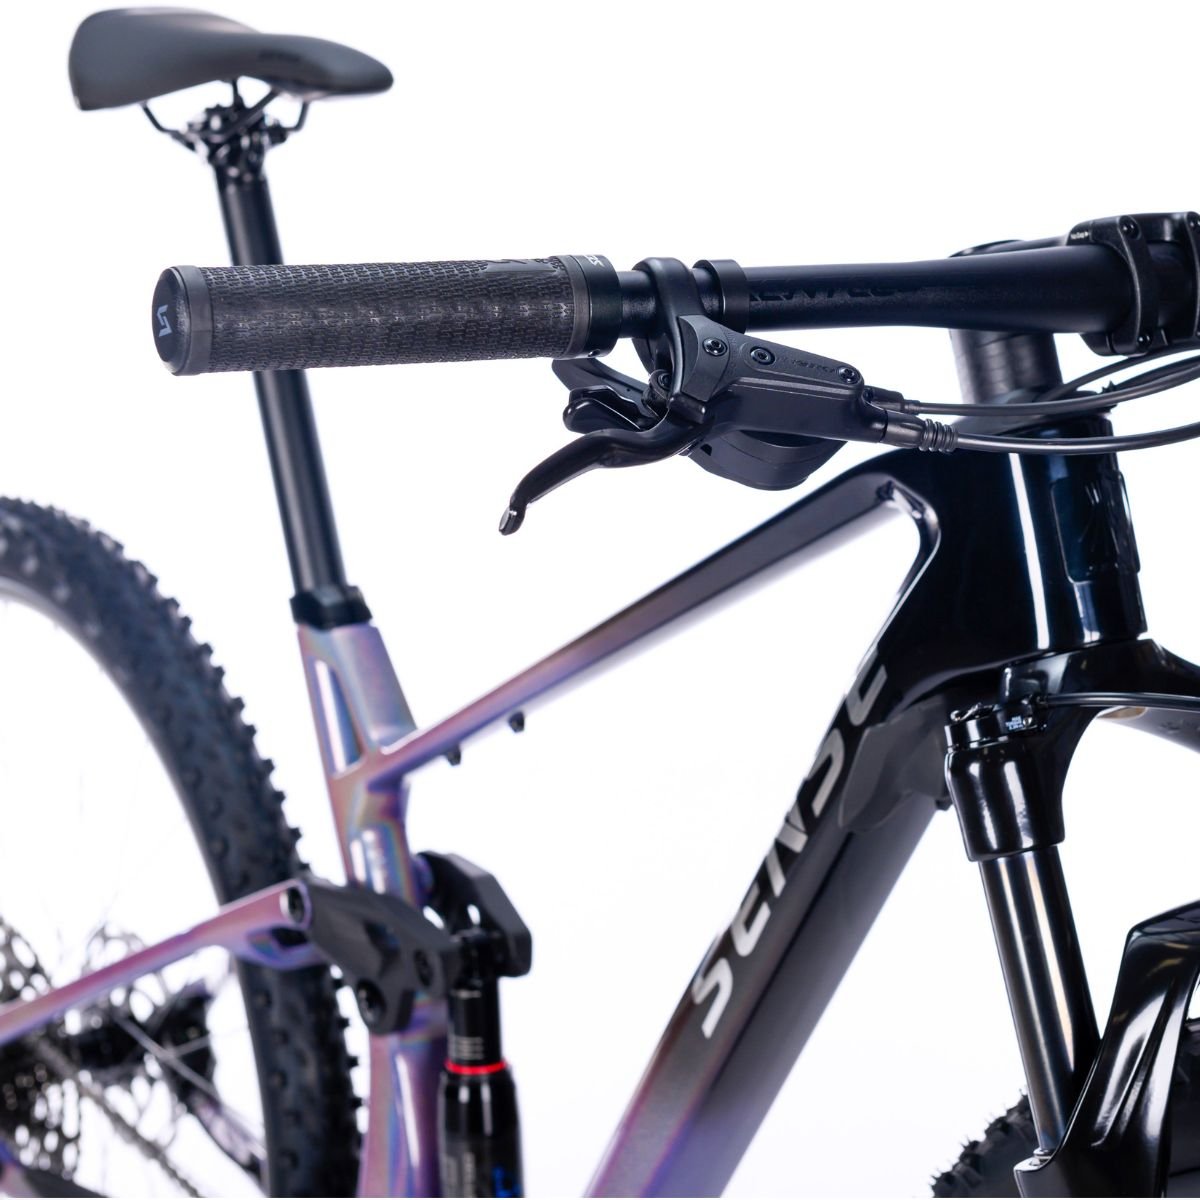 Bicicleta Full Sense Invictus Sport Carbono Shimano Cues:roxo+preto/19 - 4